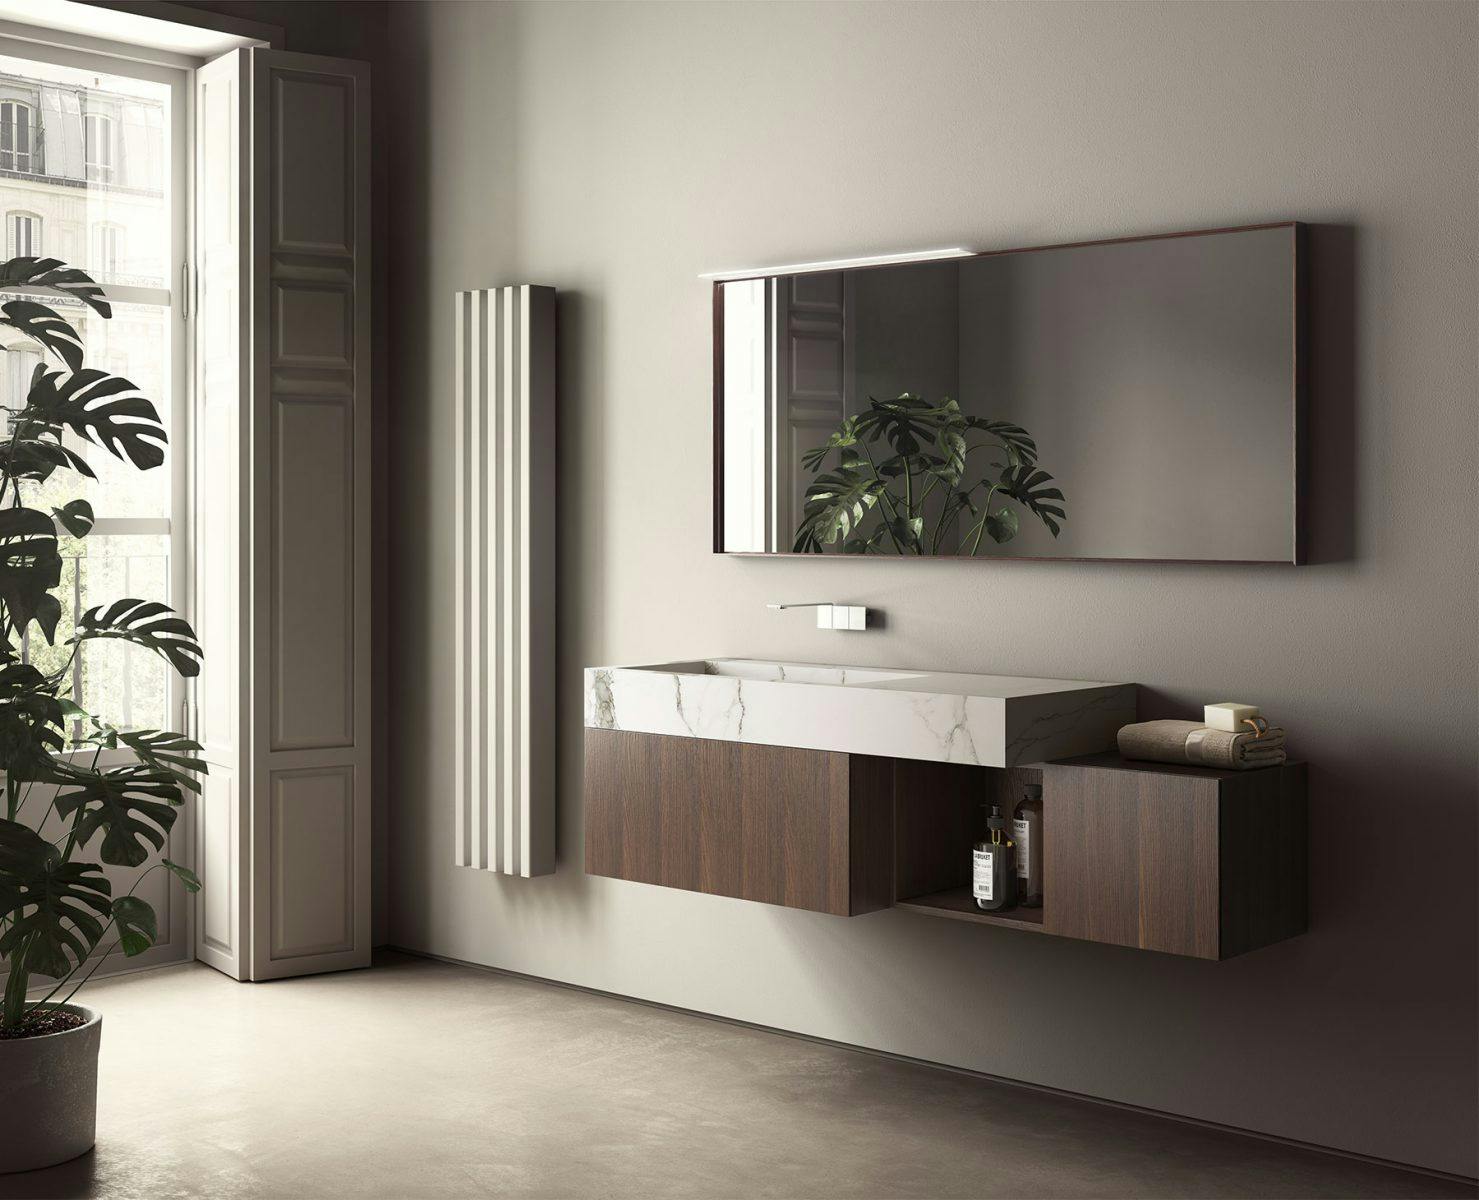 Bathrooms Ideagroup, Mona™ Design Studio